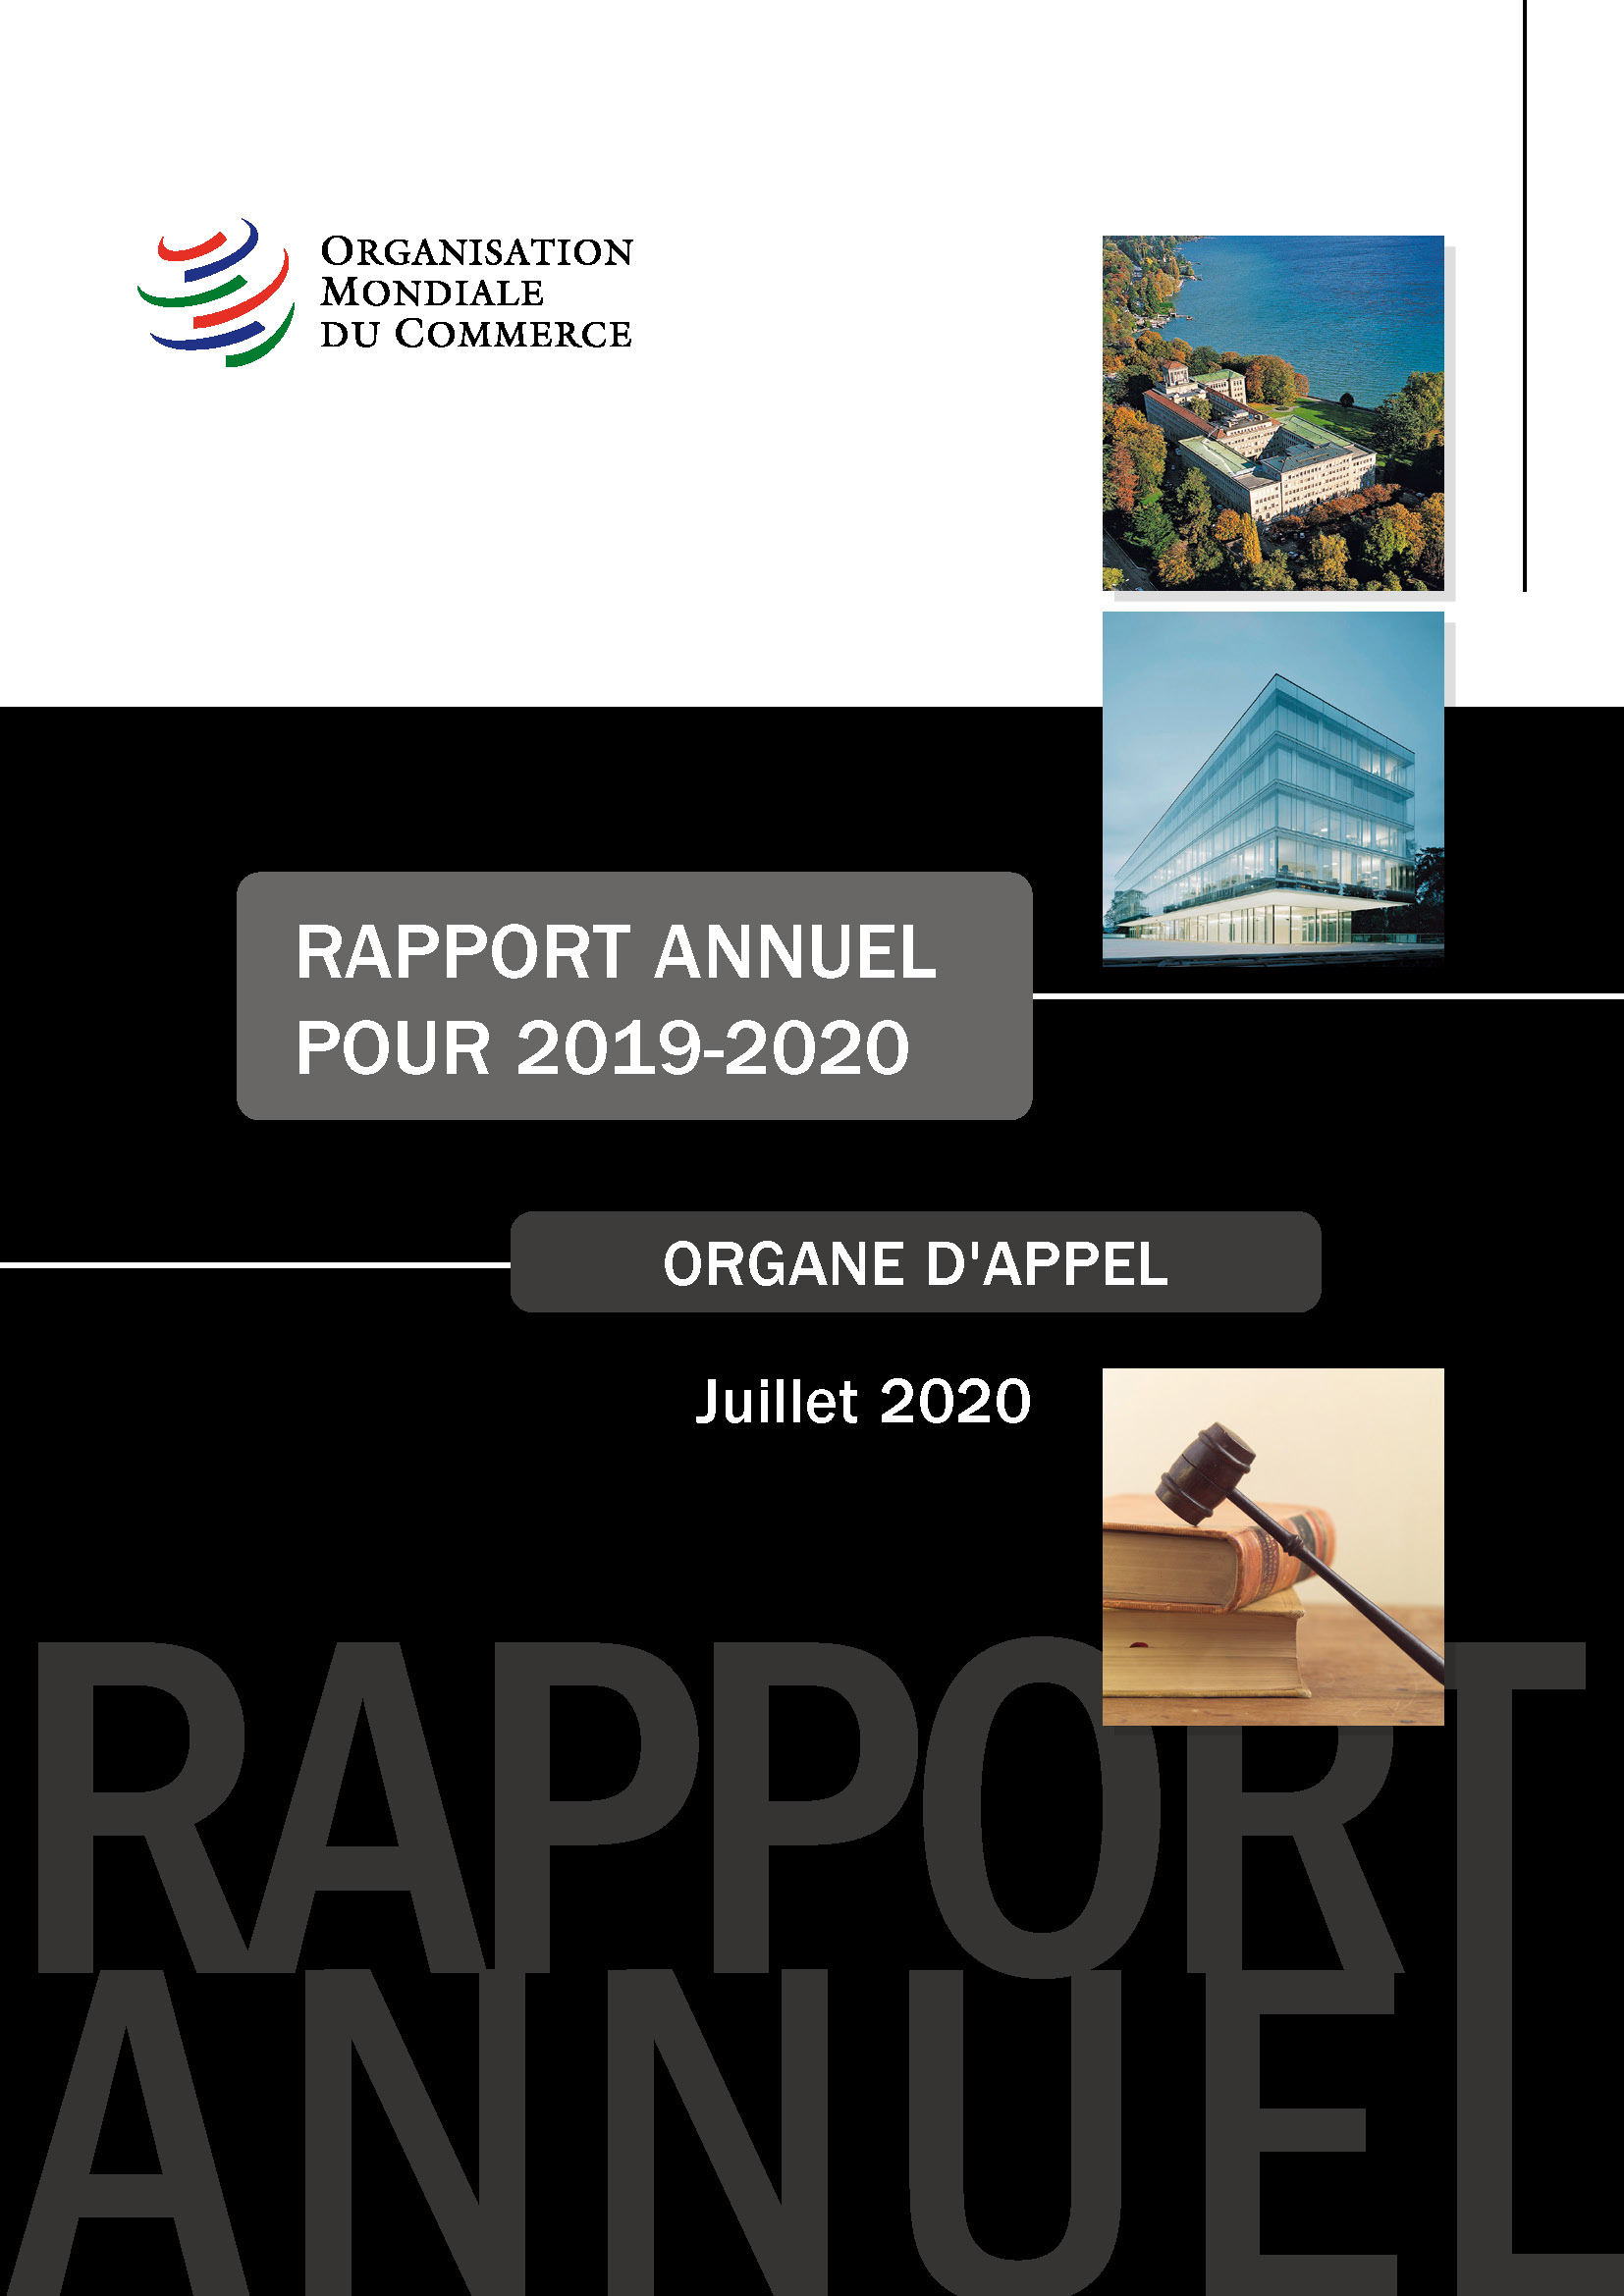 image of Rapport annuel de l’organe d’appel pour 2019-2020